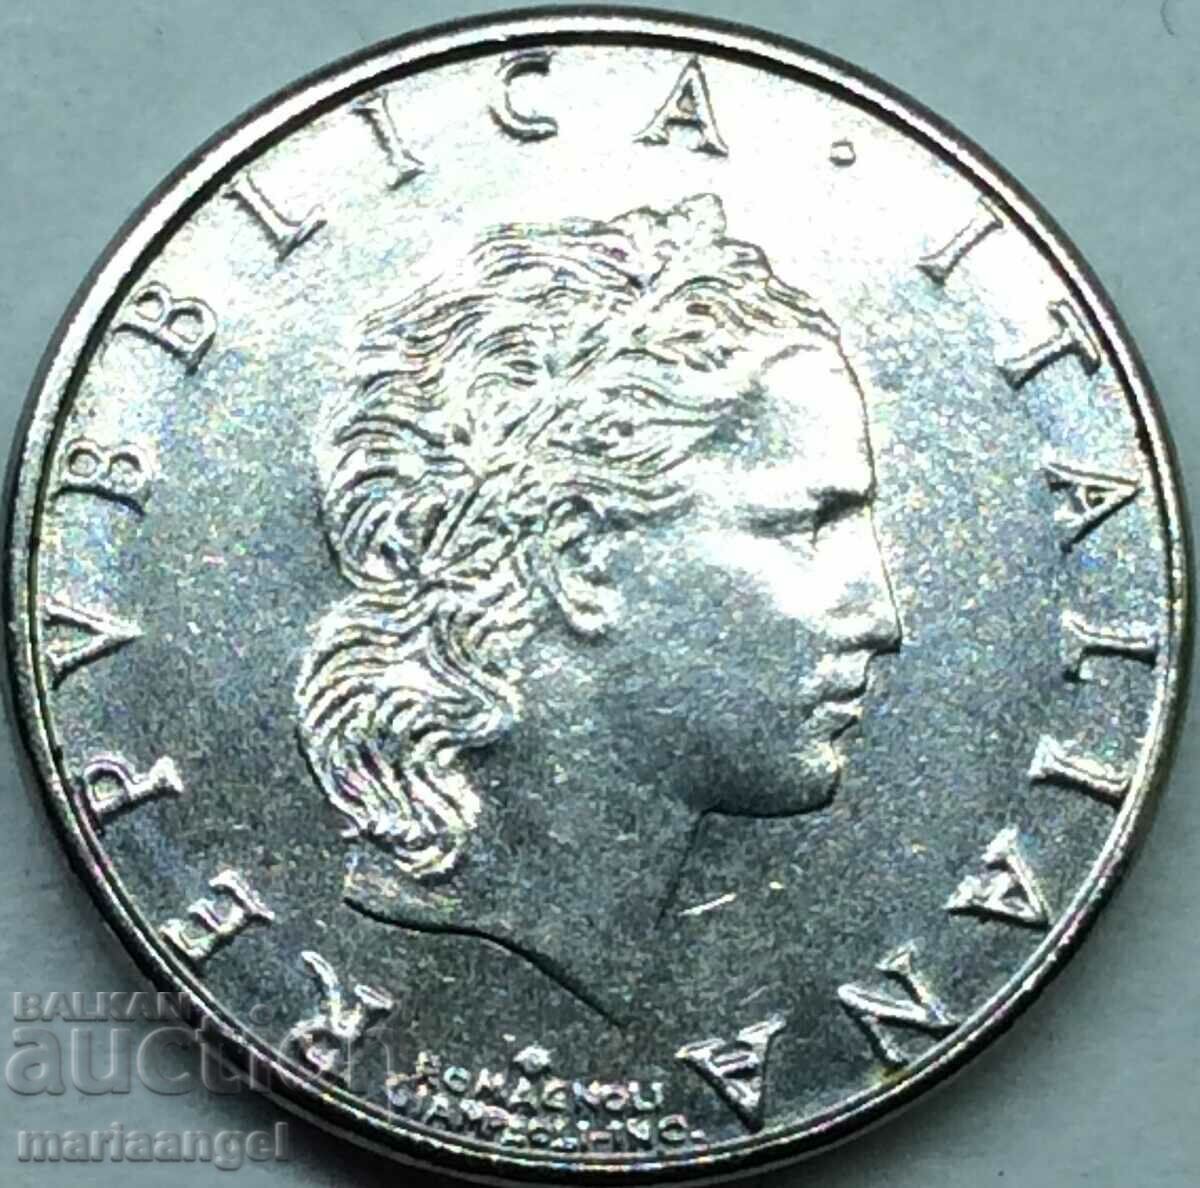 50 Lire 1994 Italy